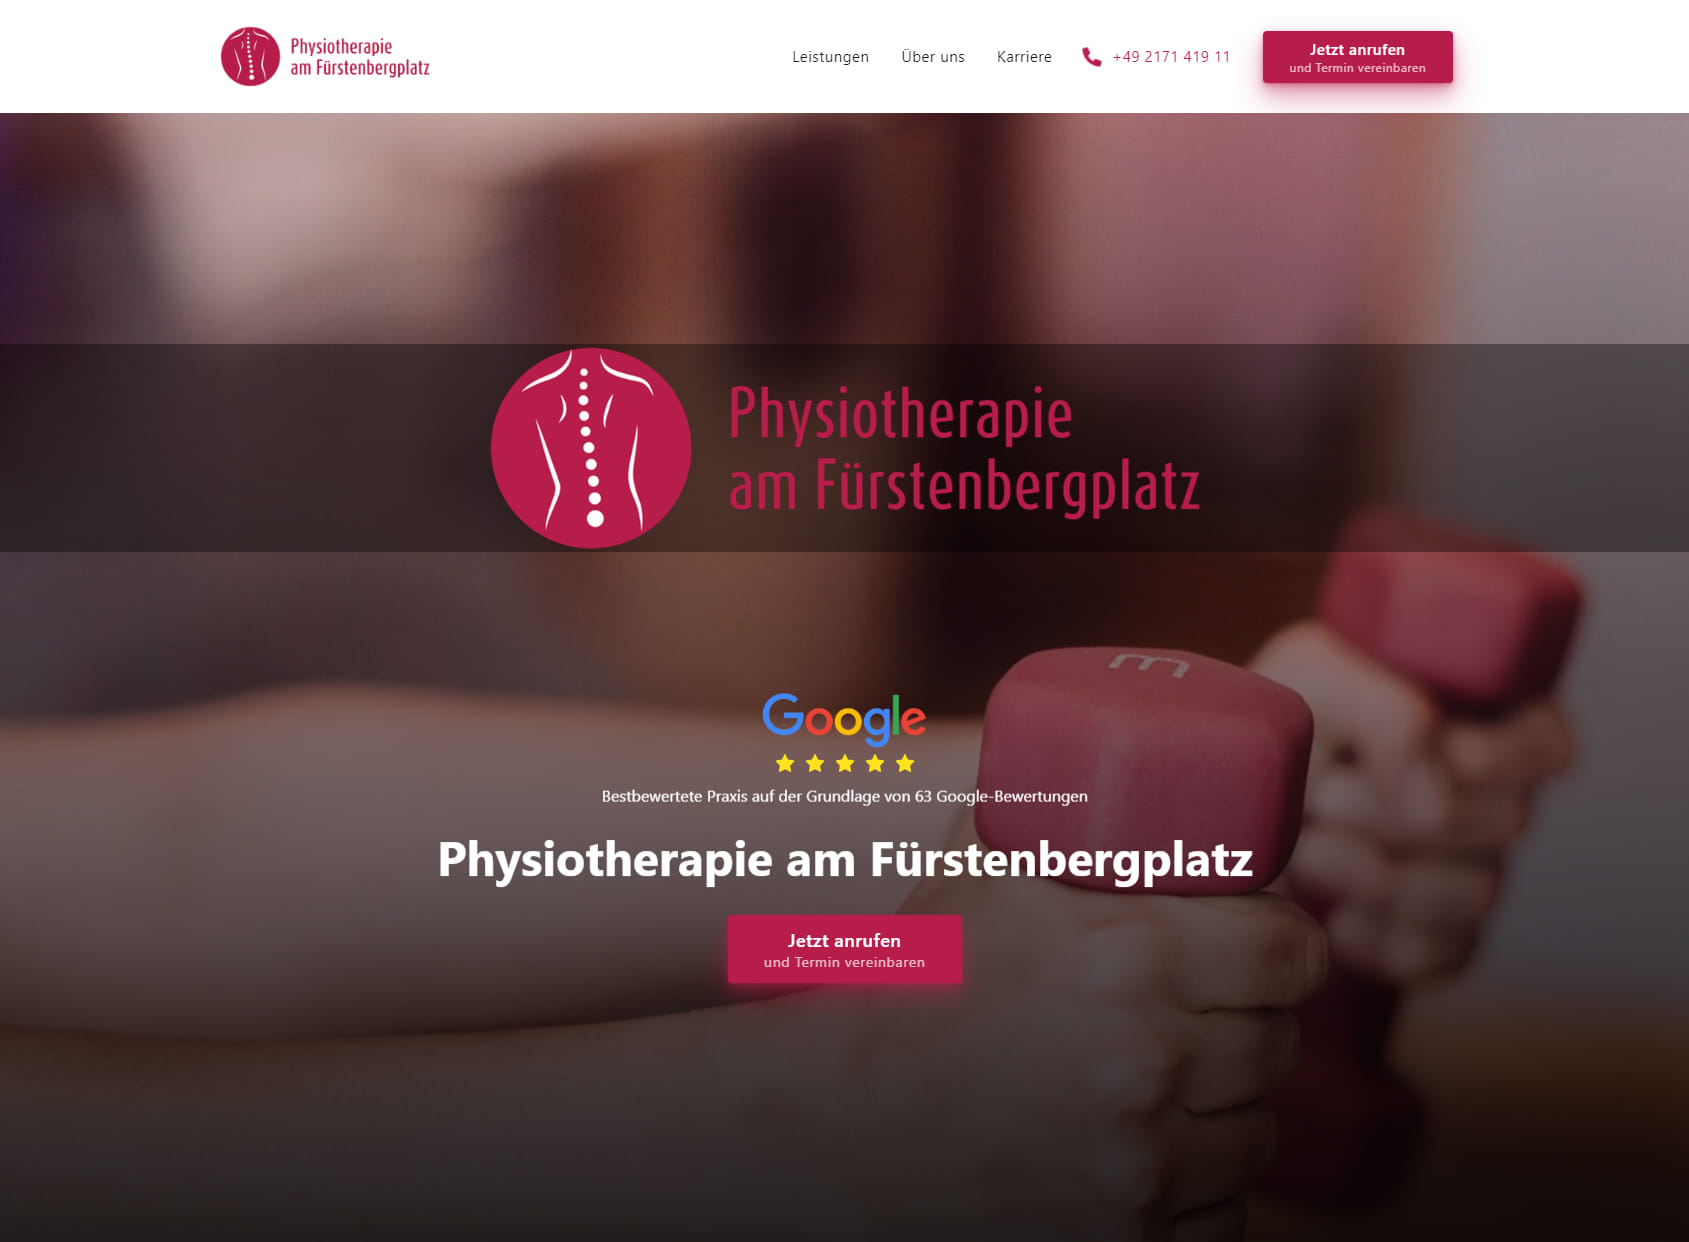 Physiotherapie am Fürstenbergplatz